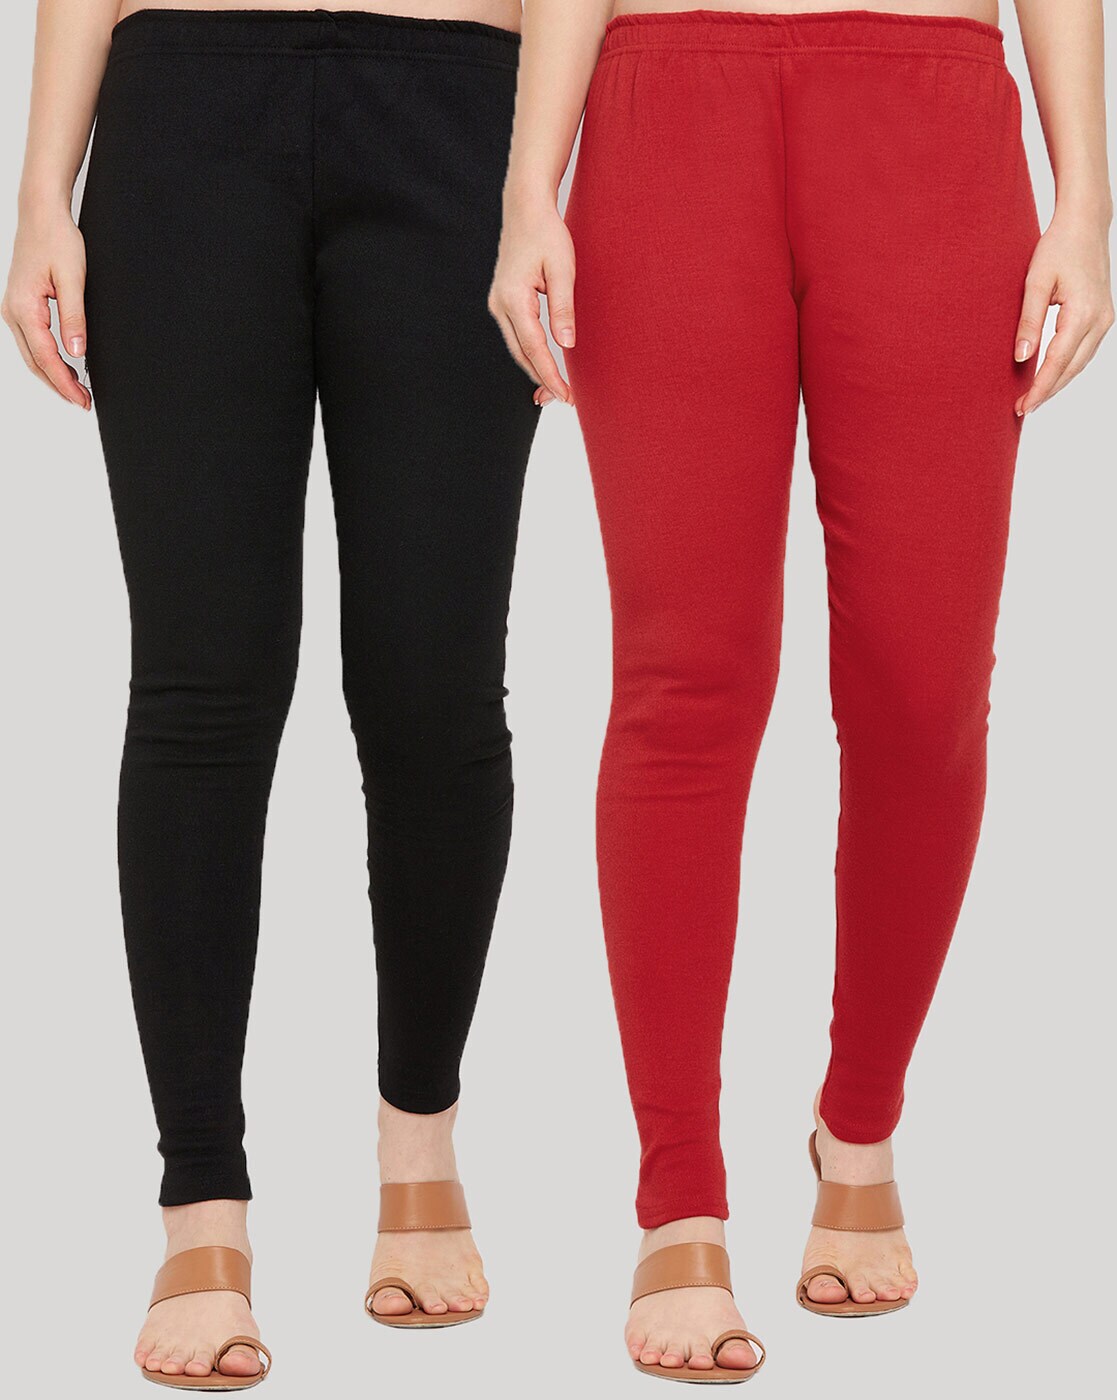 Buy Woolen Leggings for Women, Winter Bottom Wear Combo Pack of 2 Red an  Balck Garam at